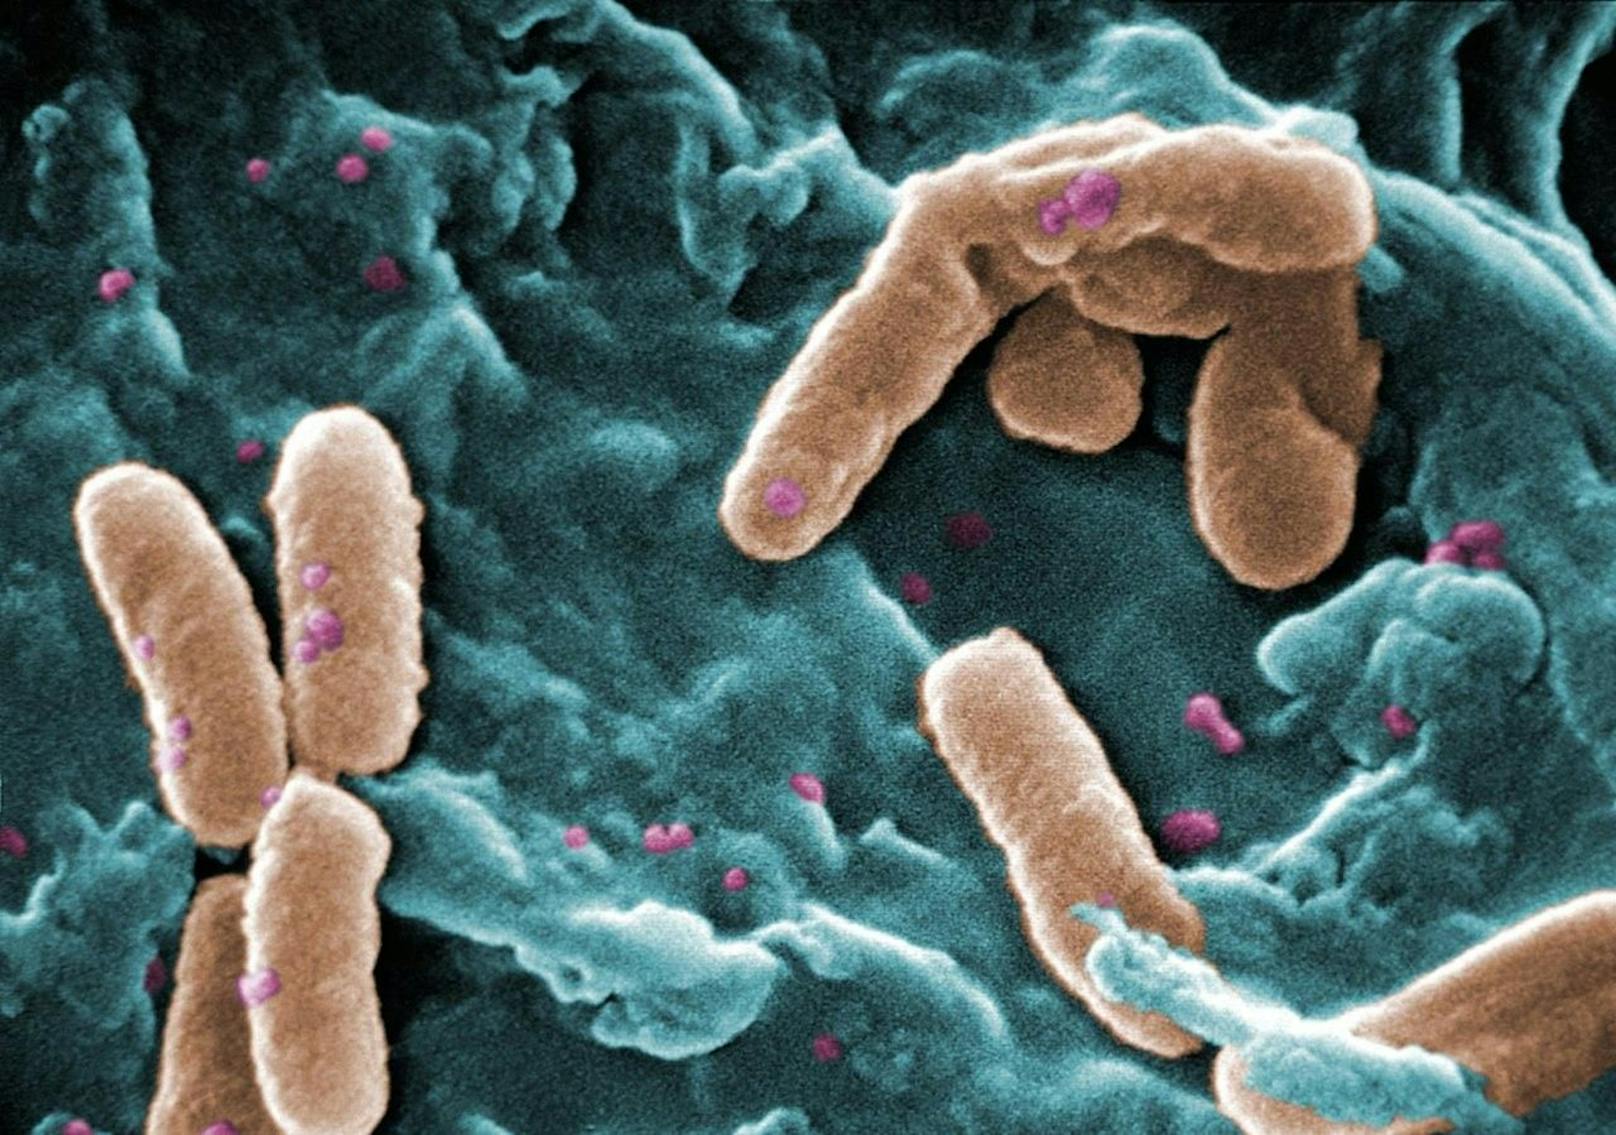 Es stellte sich heraus, dass das Produkt mit einem Bakterium namens Pseudomonas aeruginosa kontaminiert war.